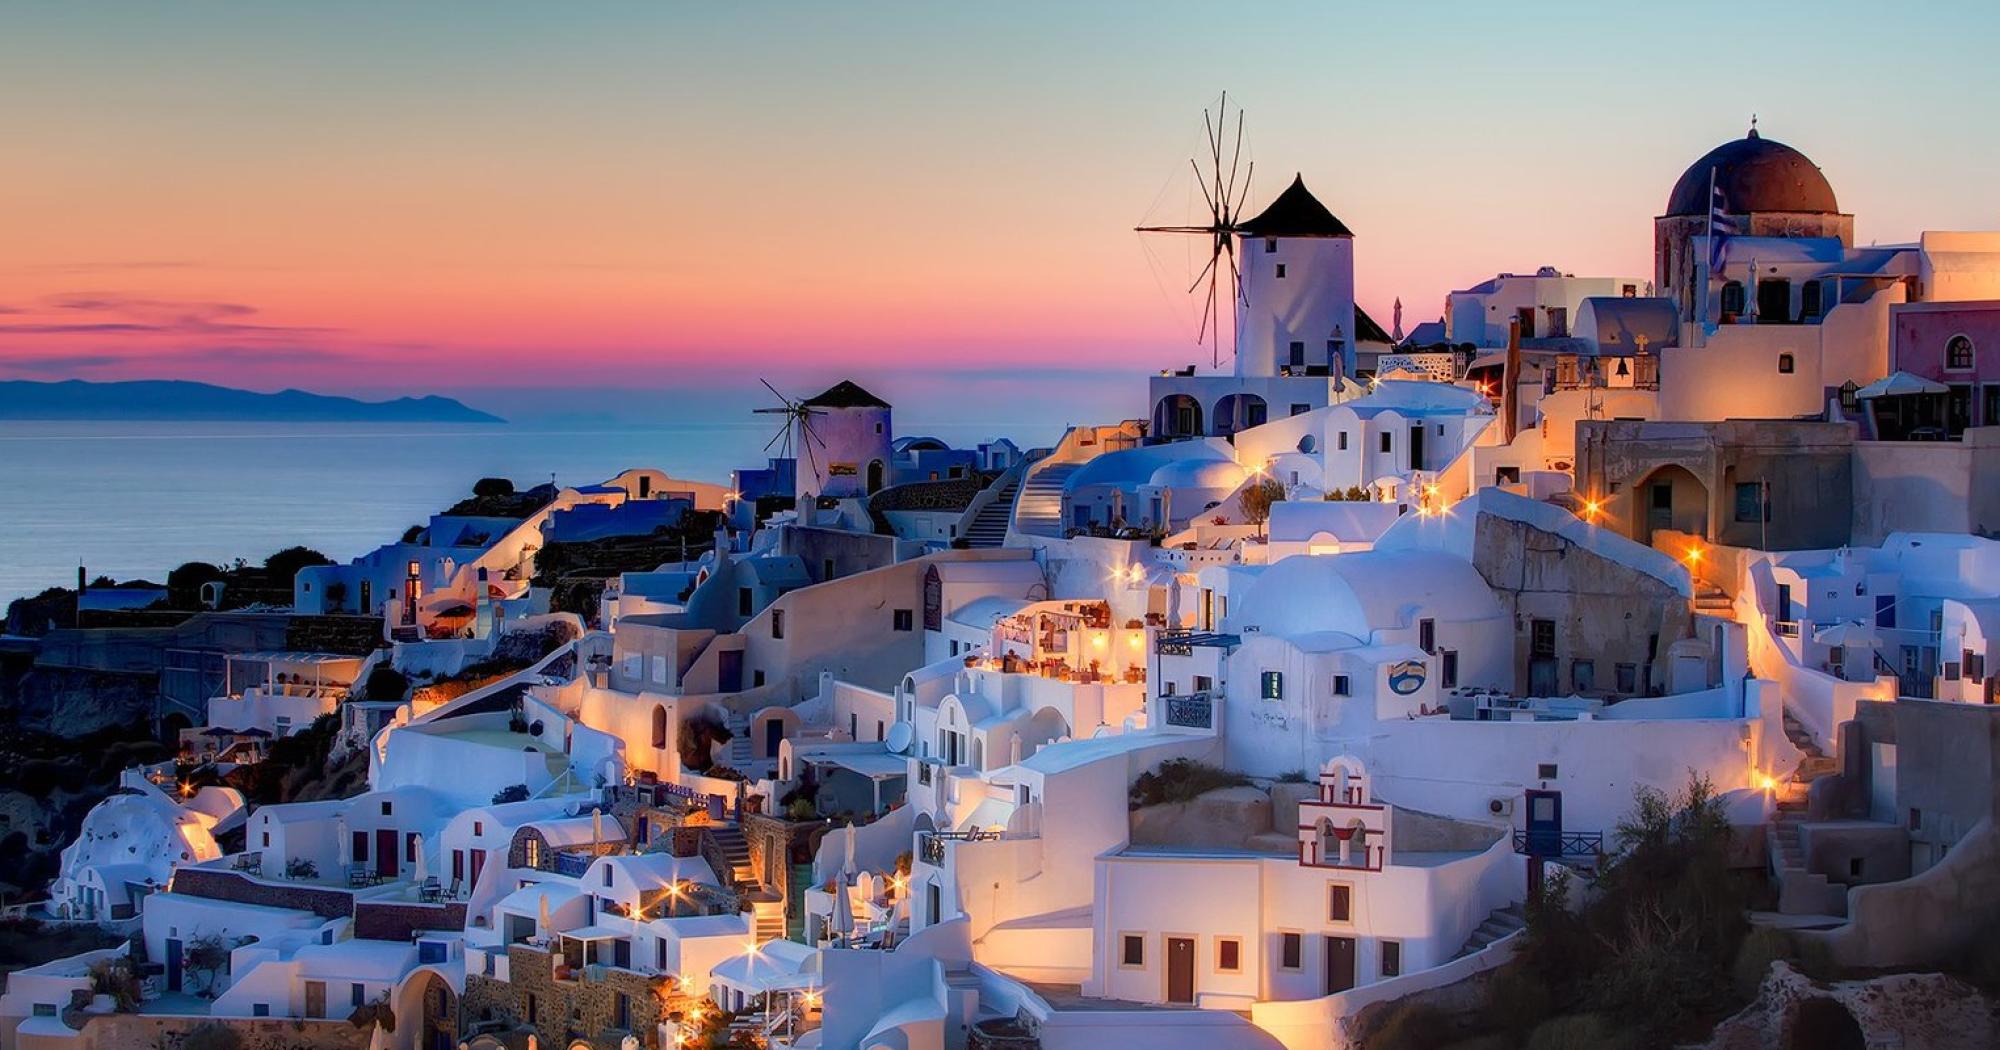  Griechenland Hintergrundbild 2000x1050. Von Kos zu den fantastischen Inseln des Süddodekanes ab 16 Jul